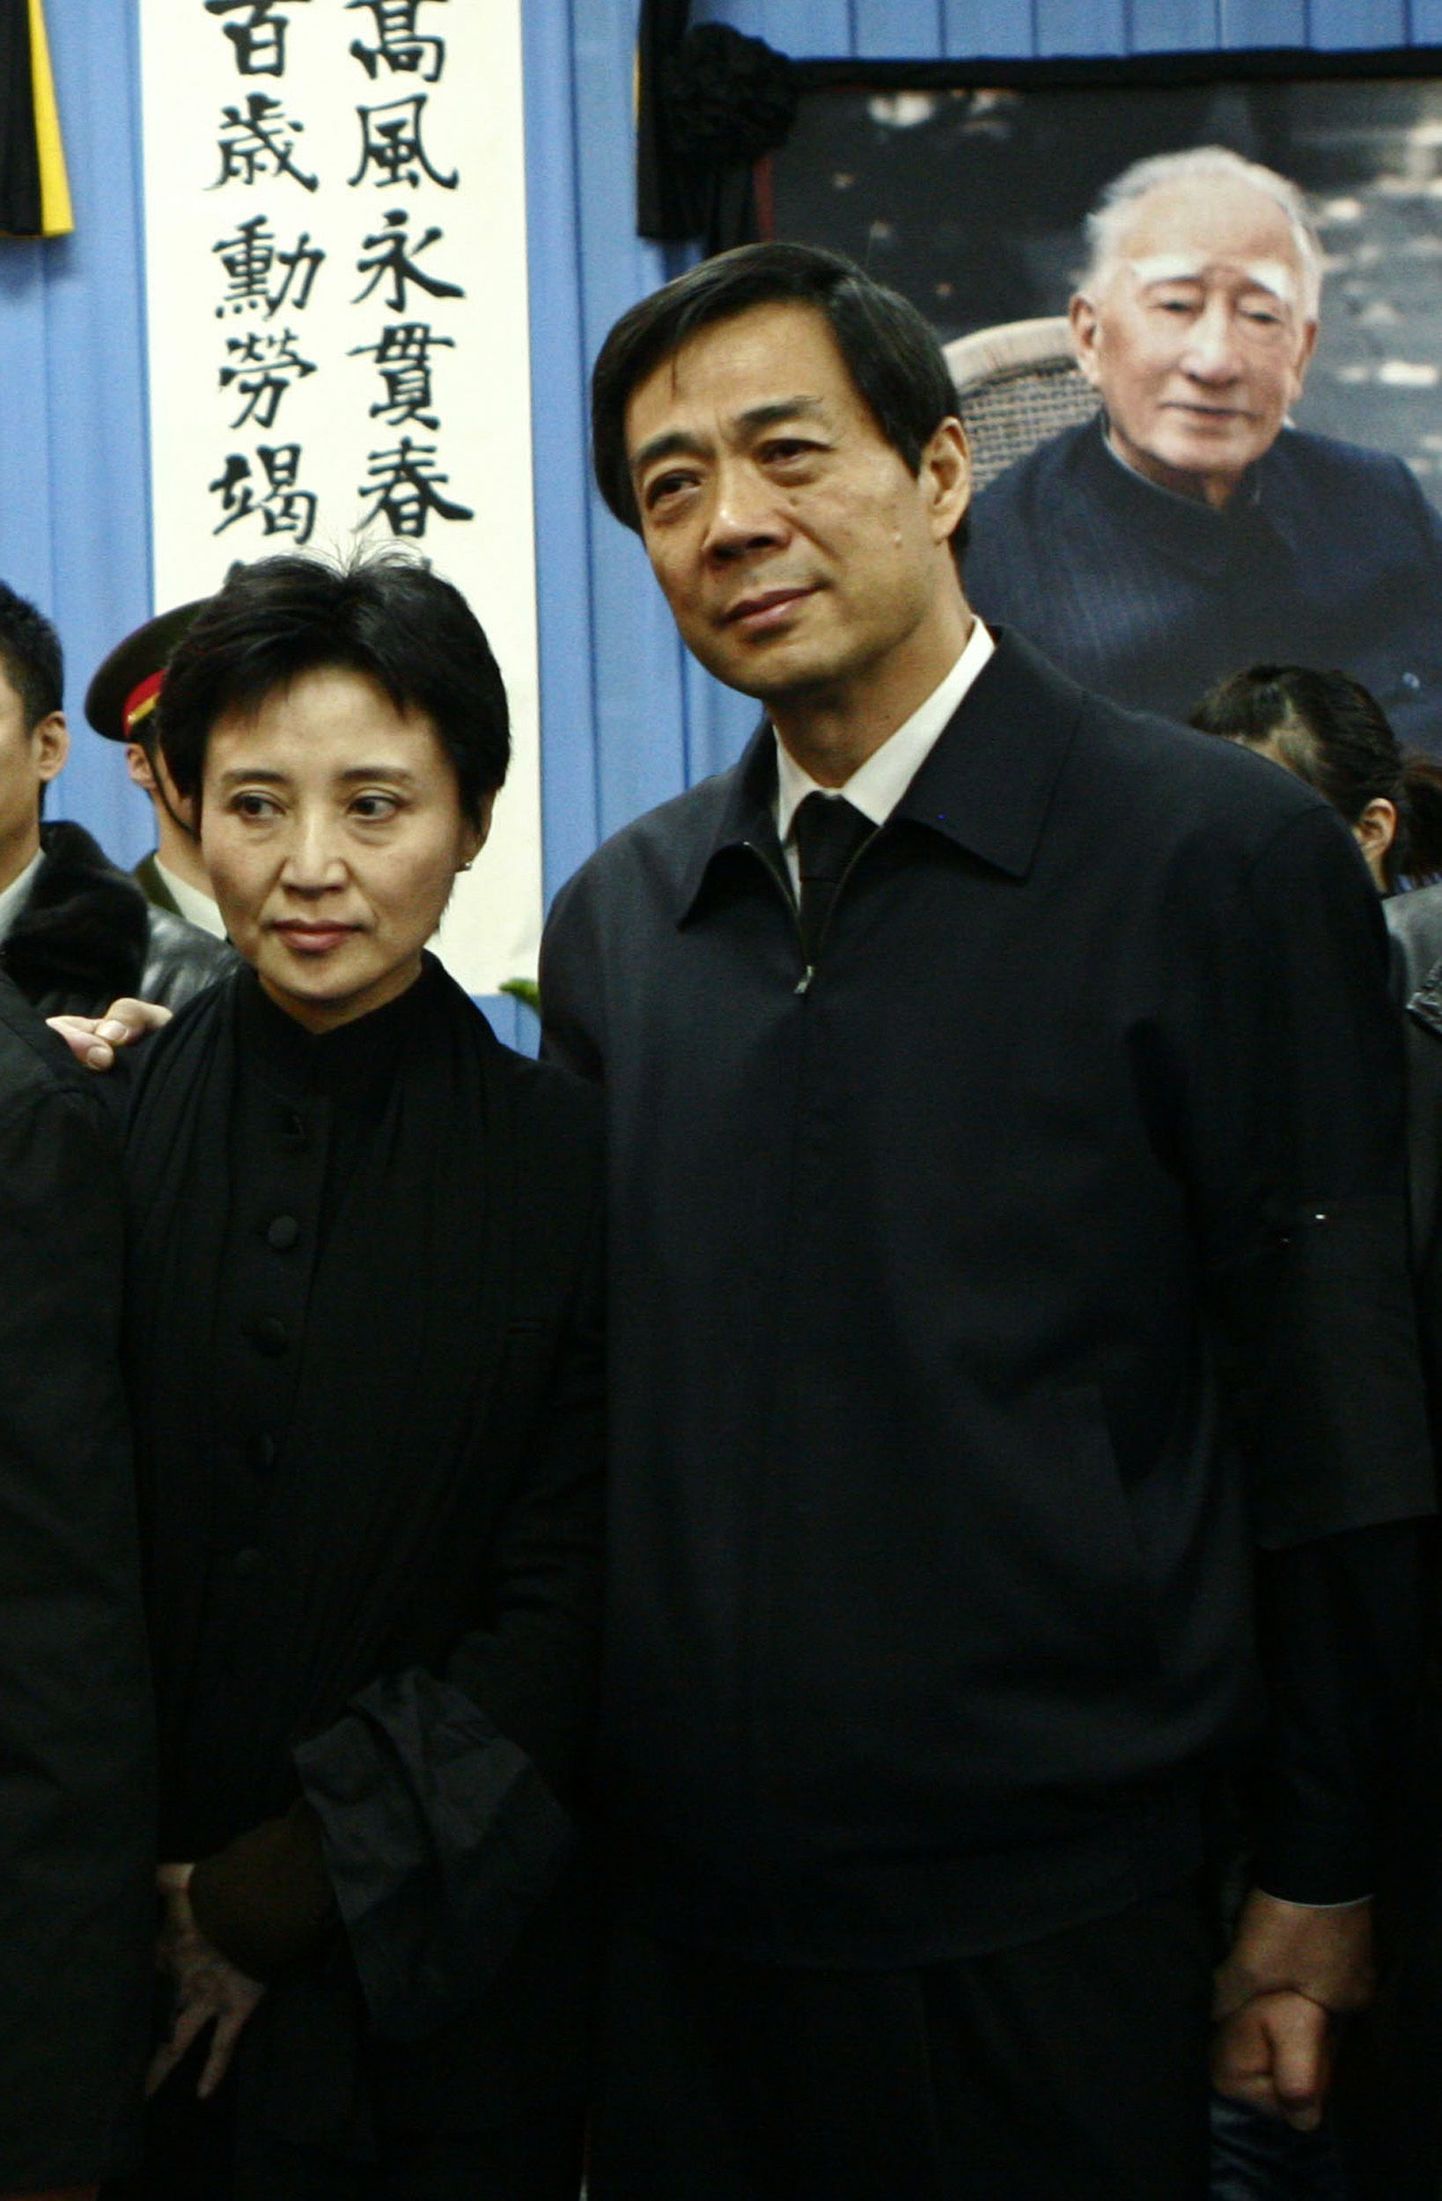 Hiina endine kõrge parteiametnik Bo Xilai paremal ning mehe mõrvas süüdistatud abikaasa Gu Kalai vasakul.